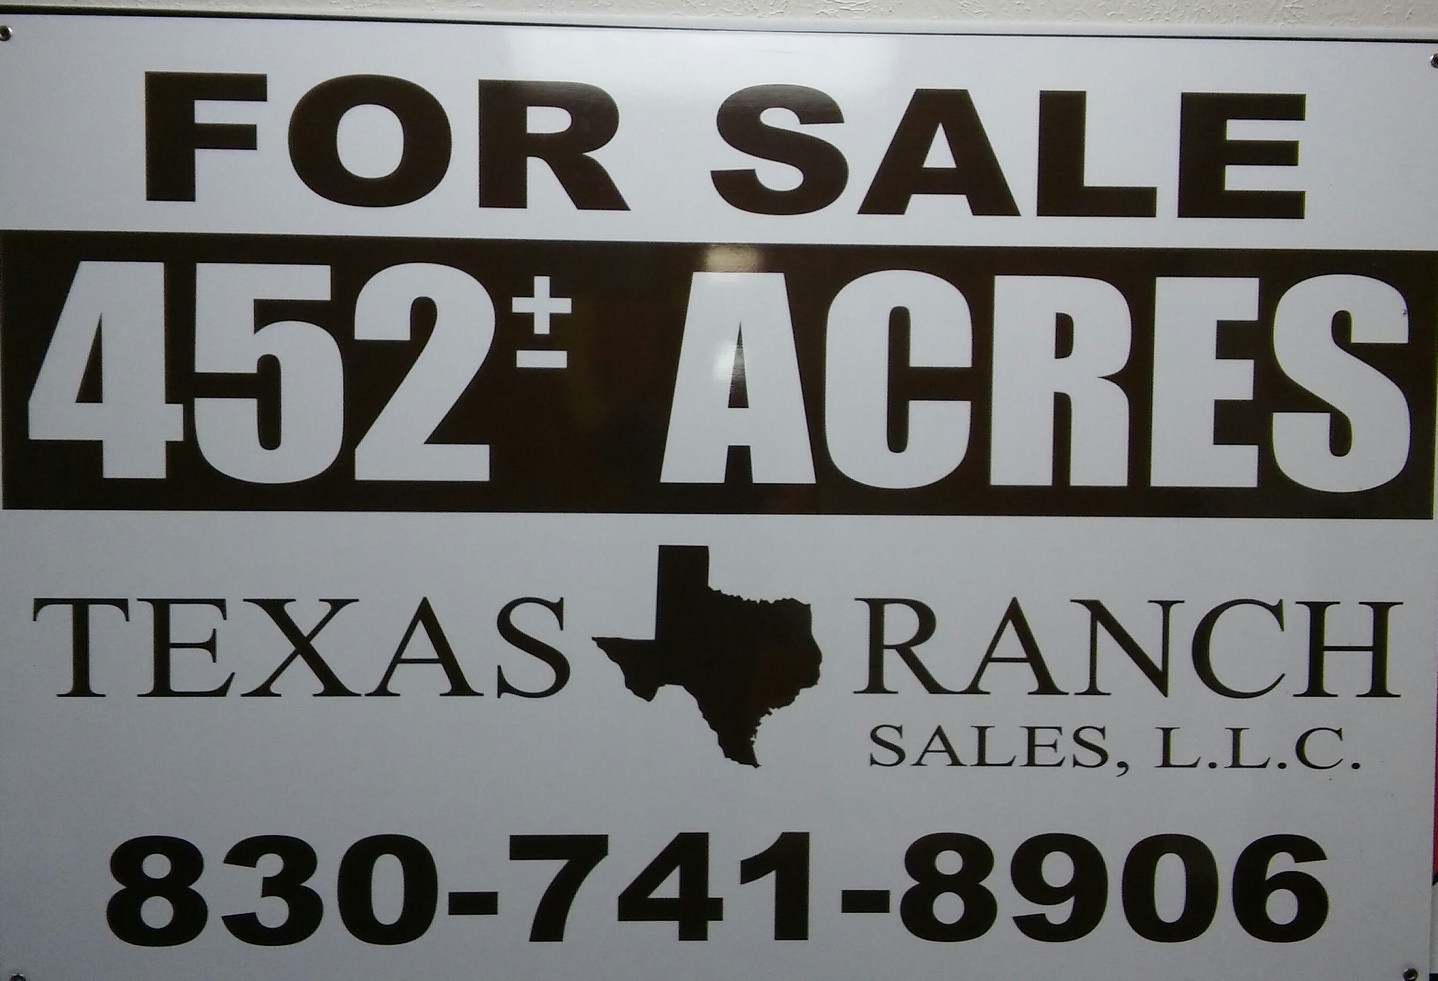 texas ranch sales